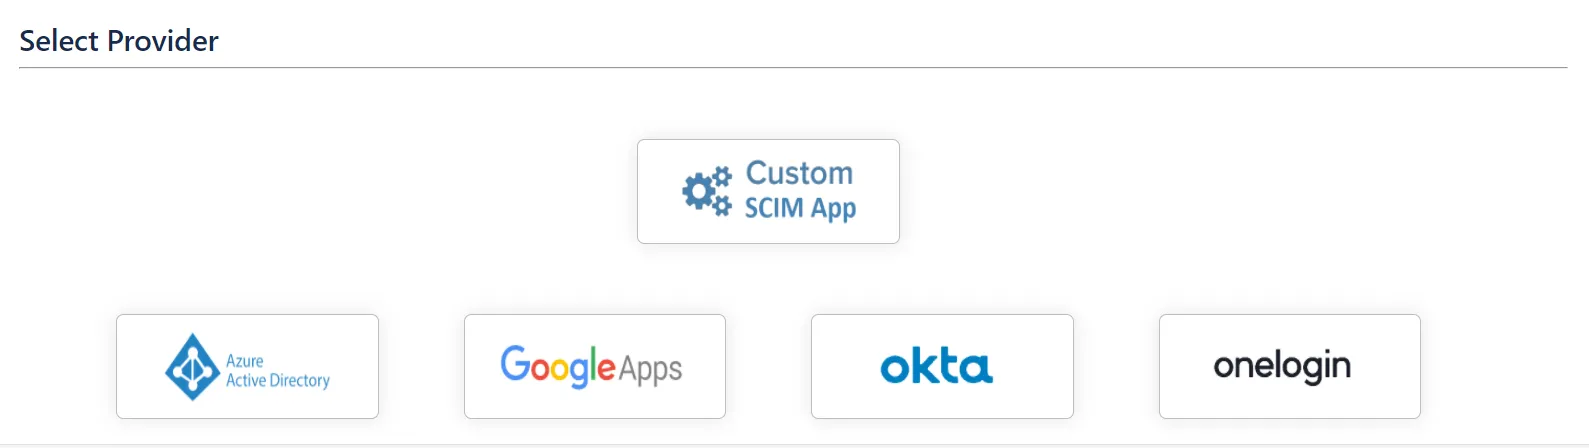 Select Okta as SCIM Provider